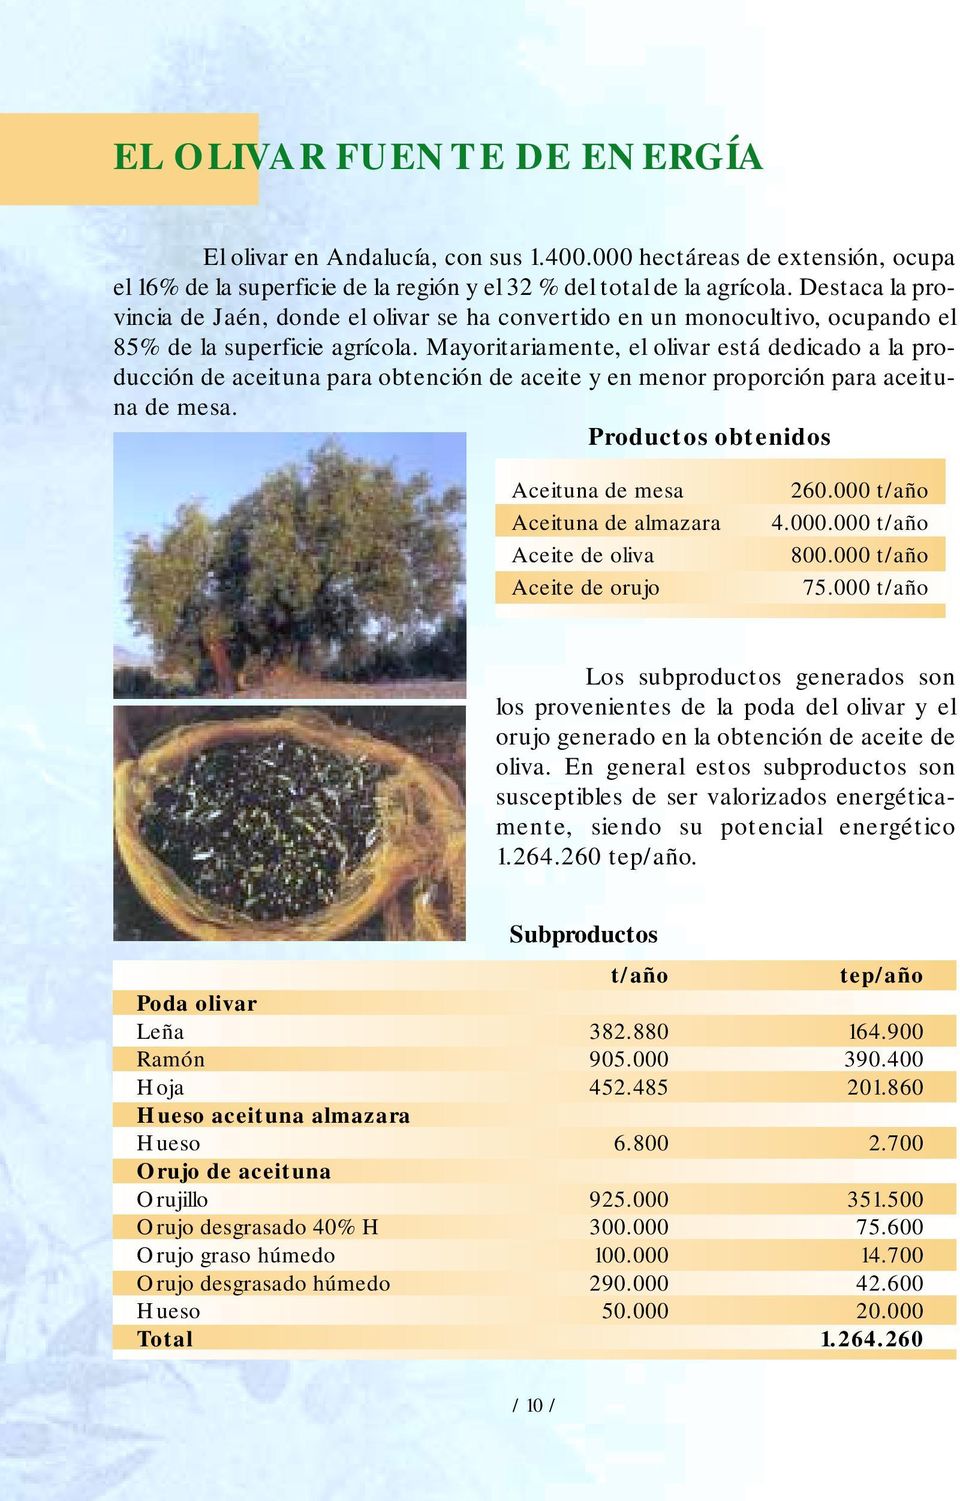 Mayoritariamente, el olivar está dedicado a la producción de aceituna para obtención de aceite y en menor proporción para aceituna de mesa.